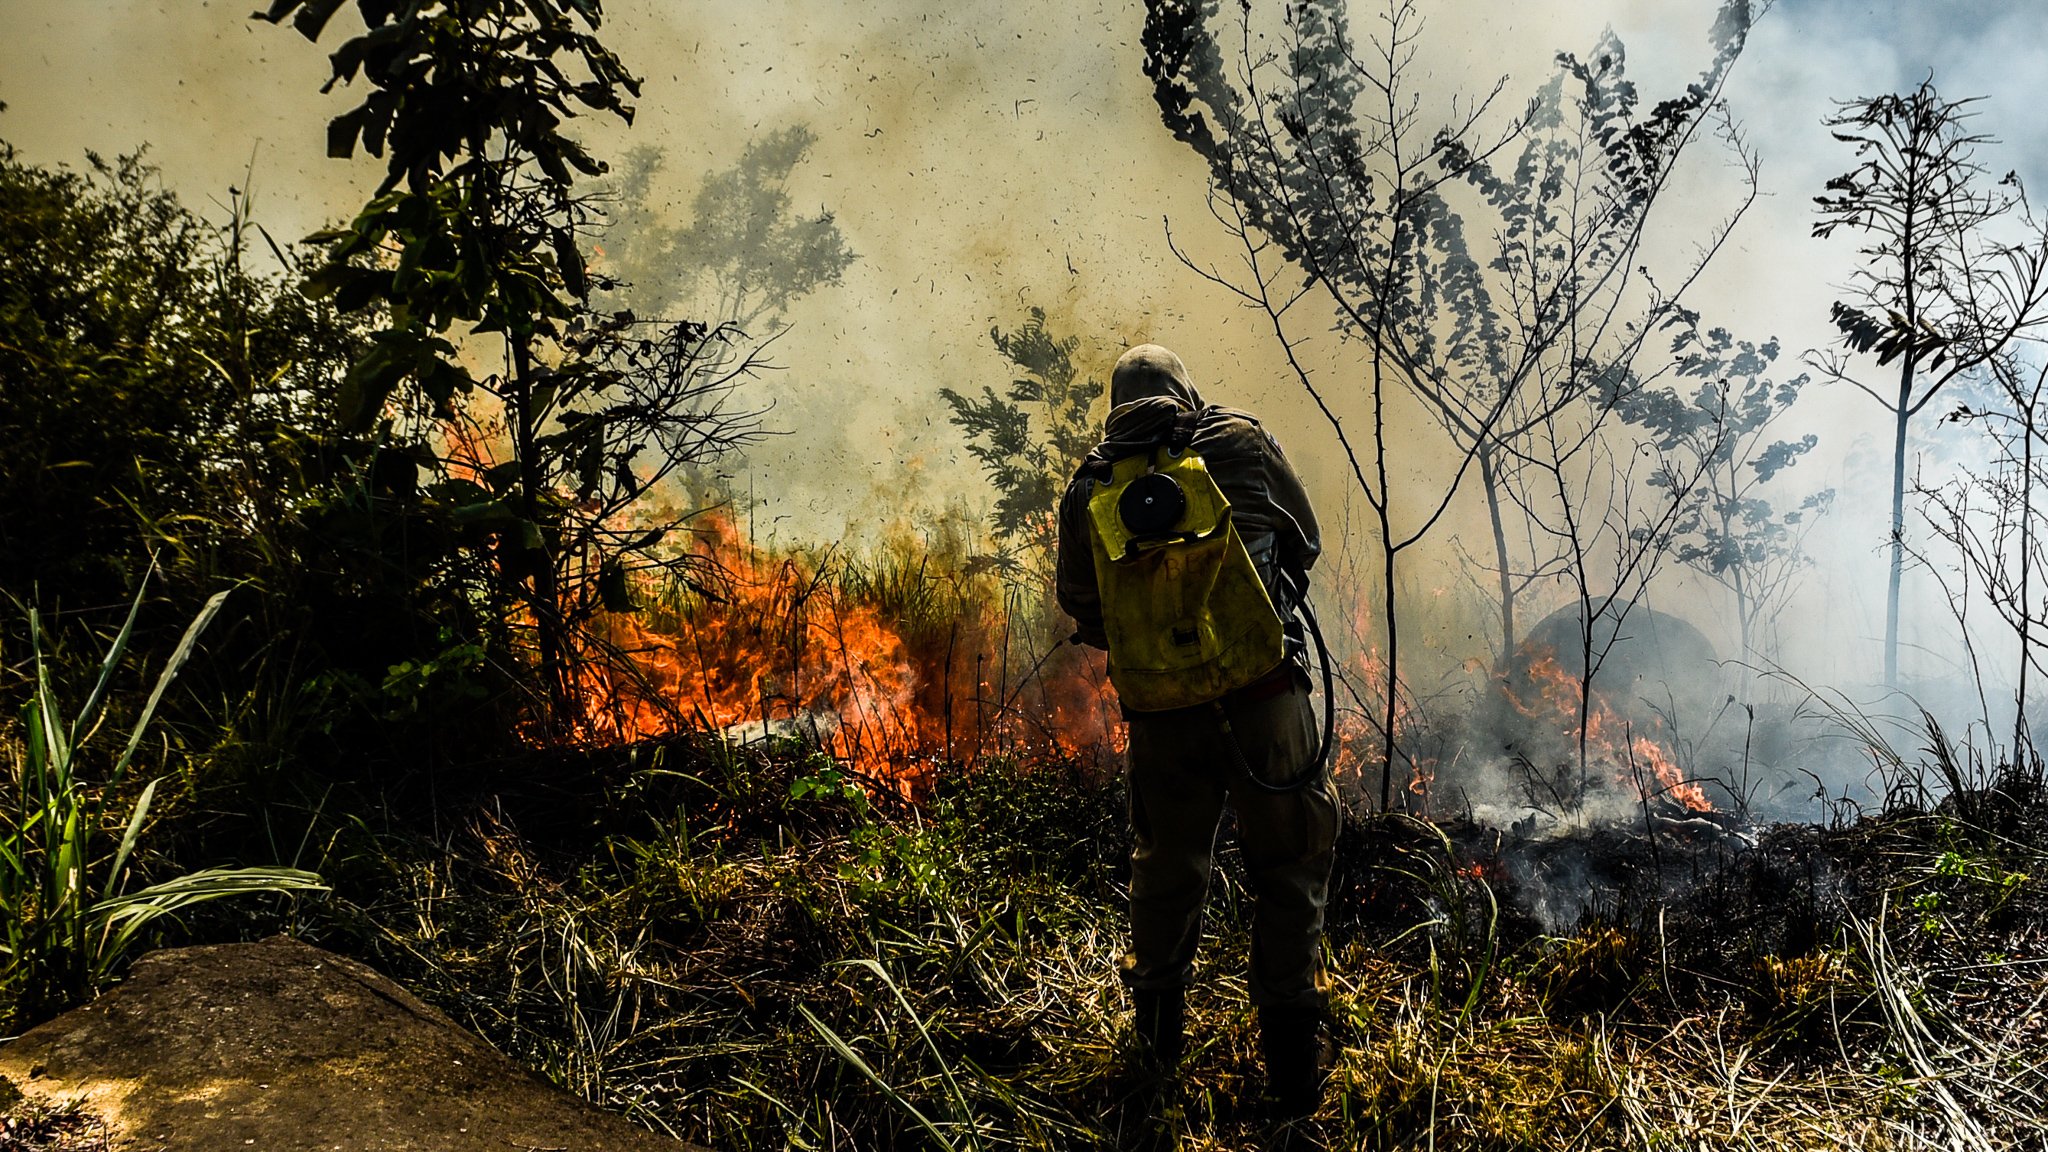 Bombeiros combatem incêndio em vegetação na região dos bairros Fradinhos e Romão, Vitória-ES